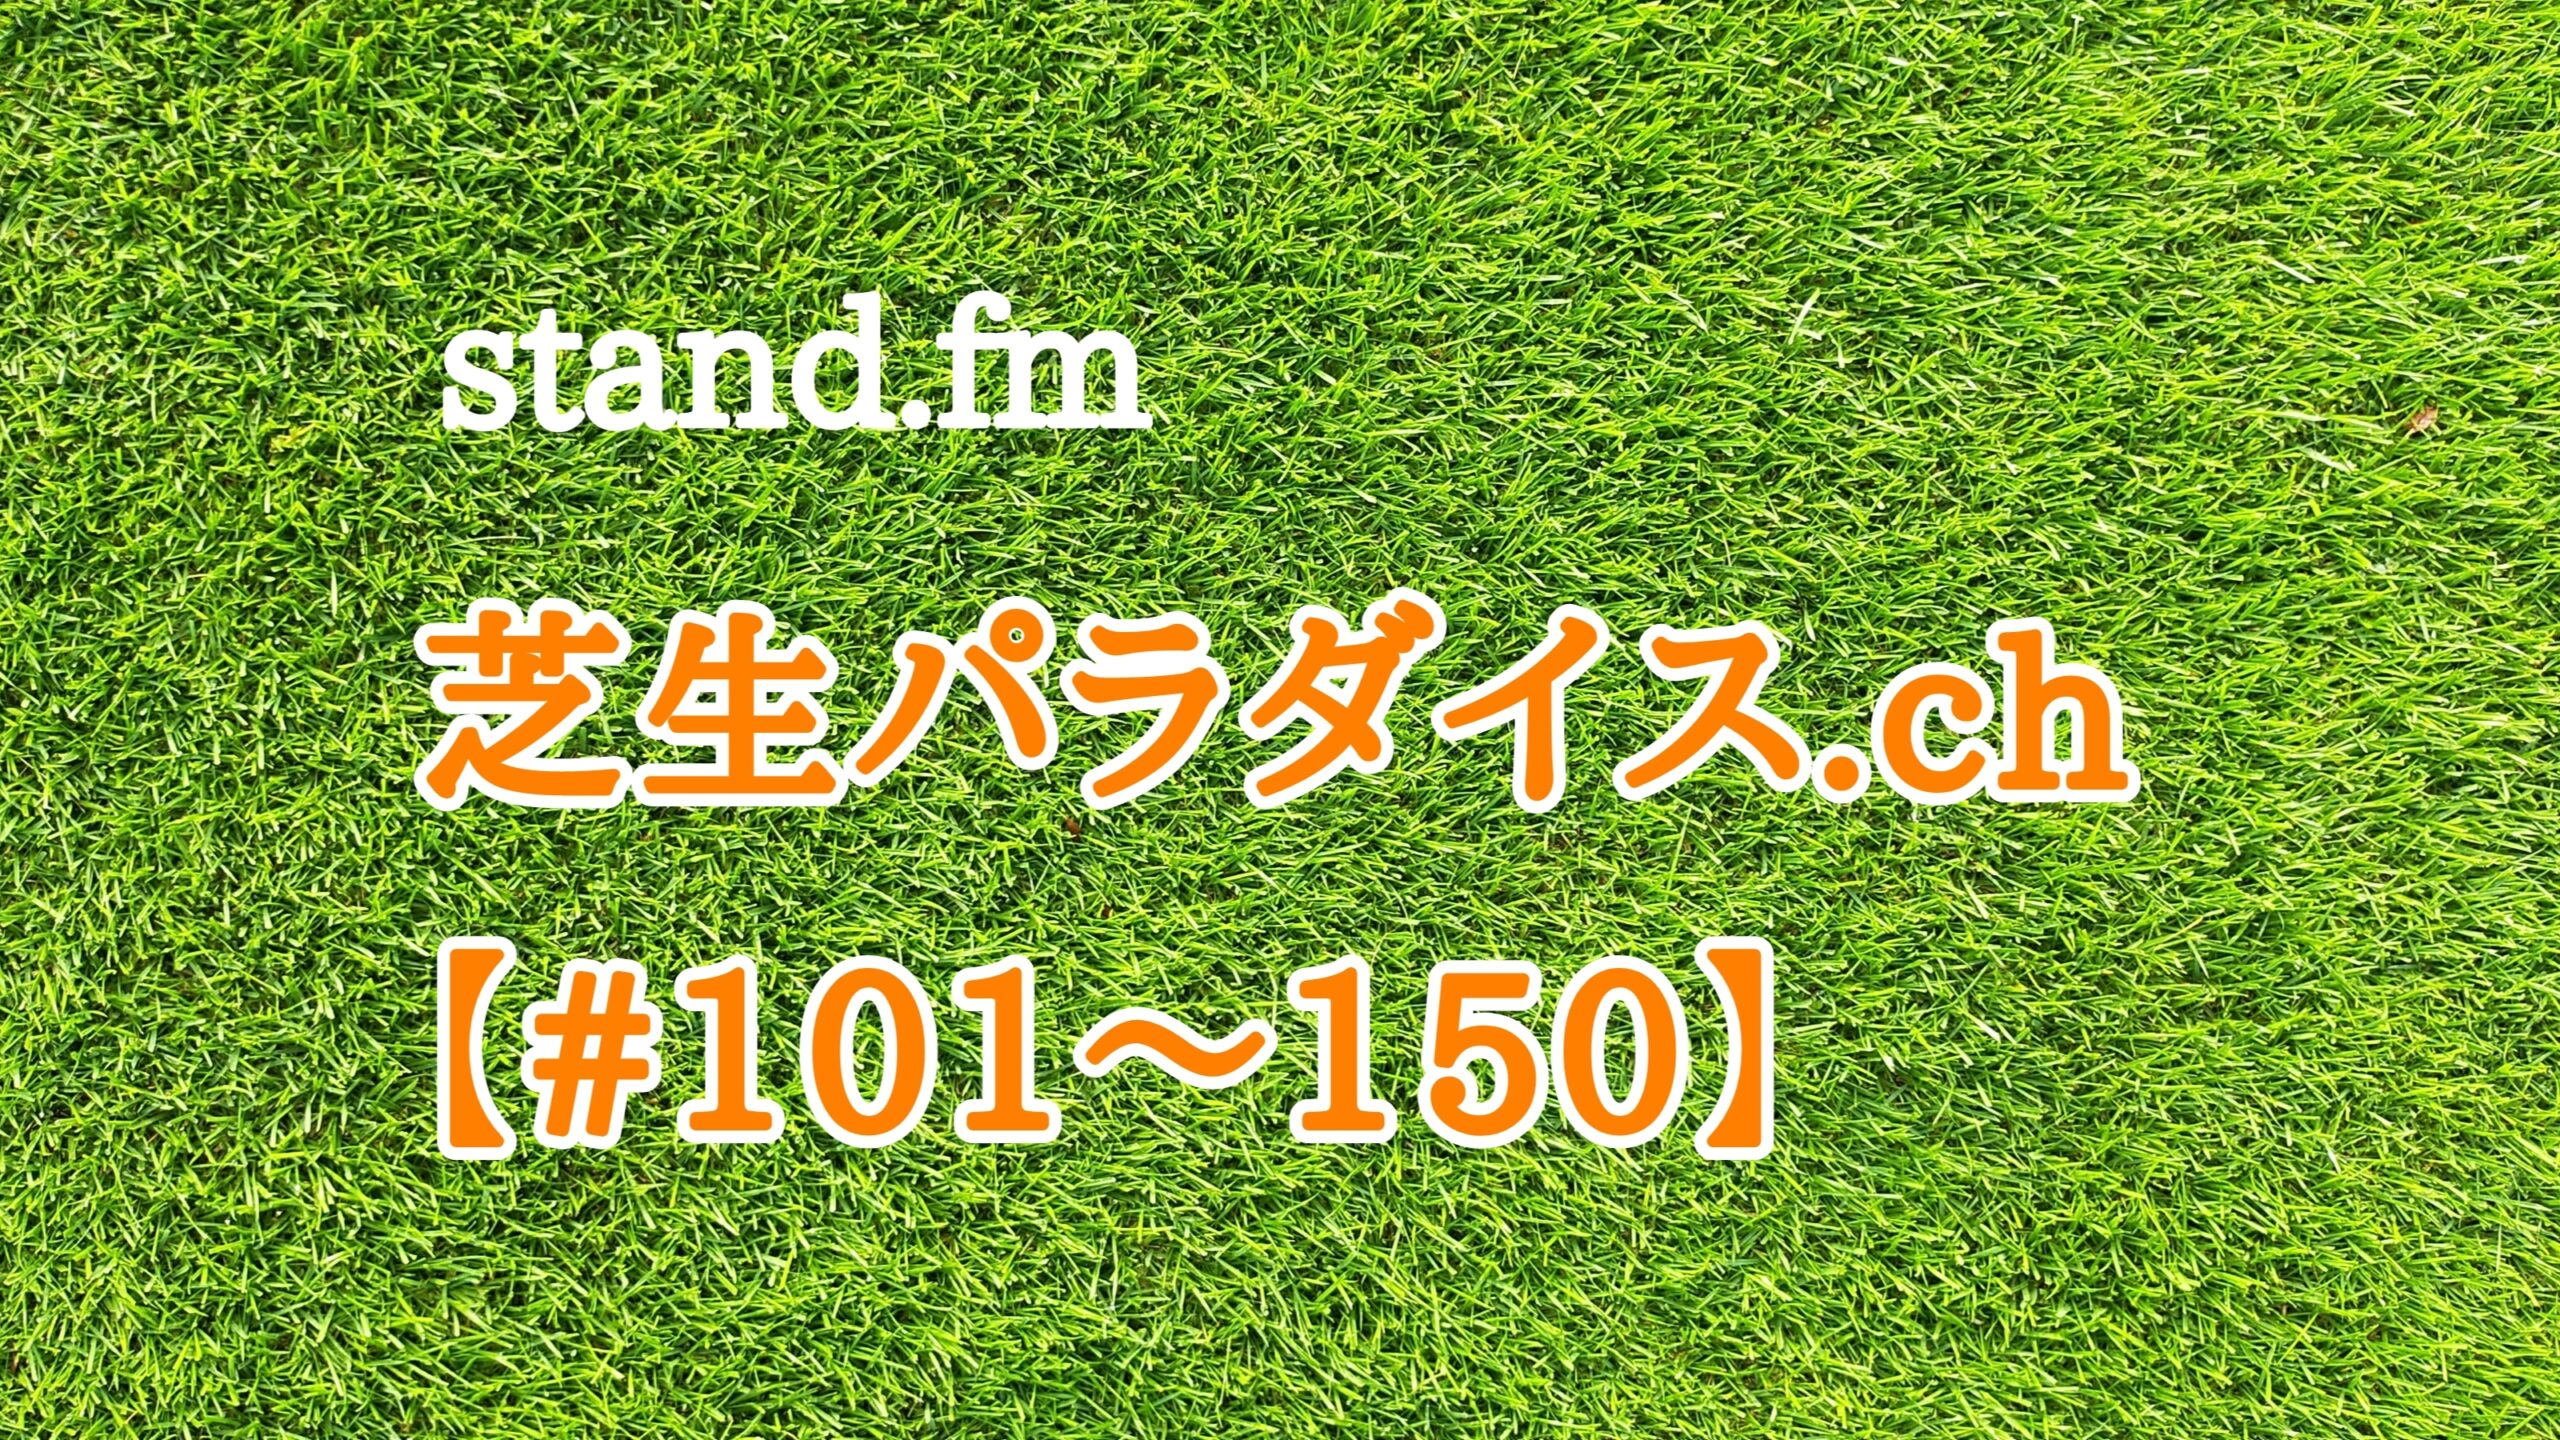 【#101〜150】stand.fm 🍀芝生パラダイス・チャンネル📻😄💕